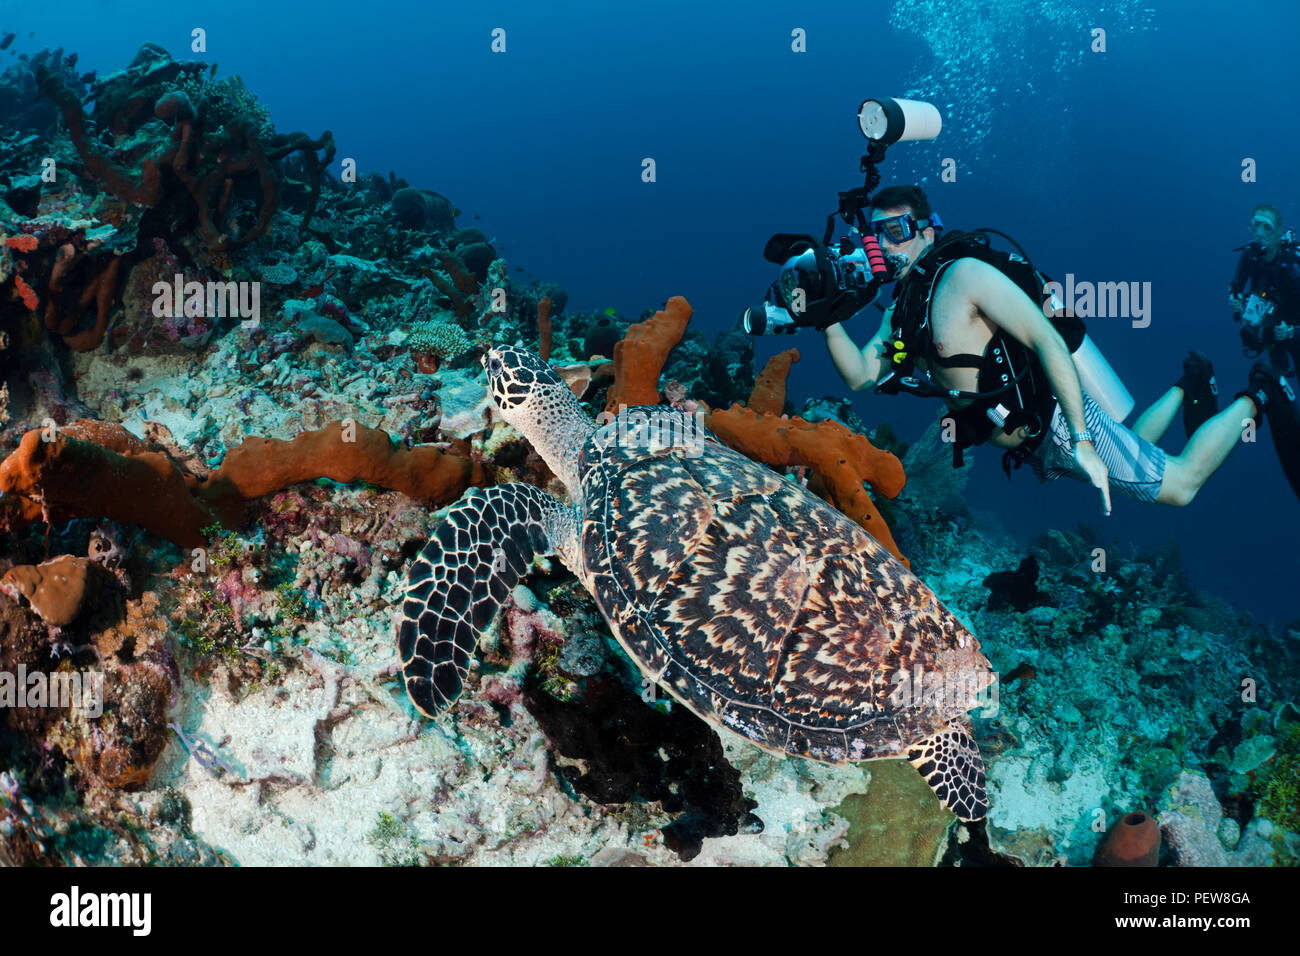 Un subacqueo le riprese di una reflex digitale in linea su una tartaruga embricata, Eretmochelys imbricata, su un reef indonesiano. I subacquei sono il modello rilasciato. Foto Stock